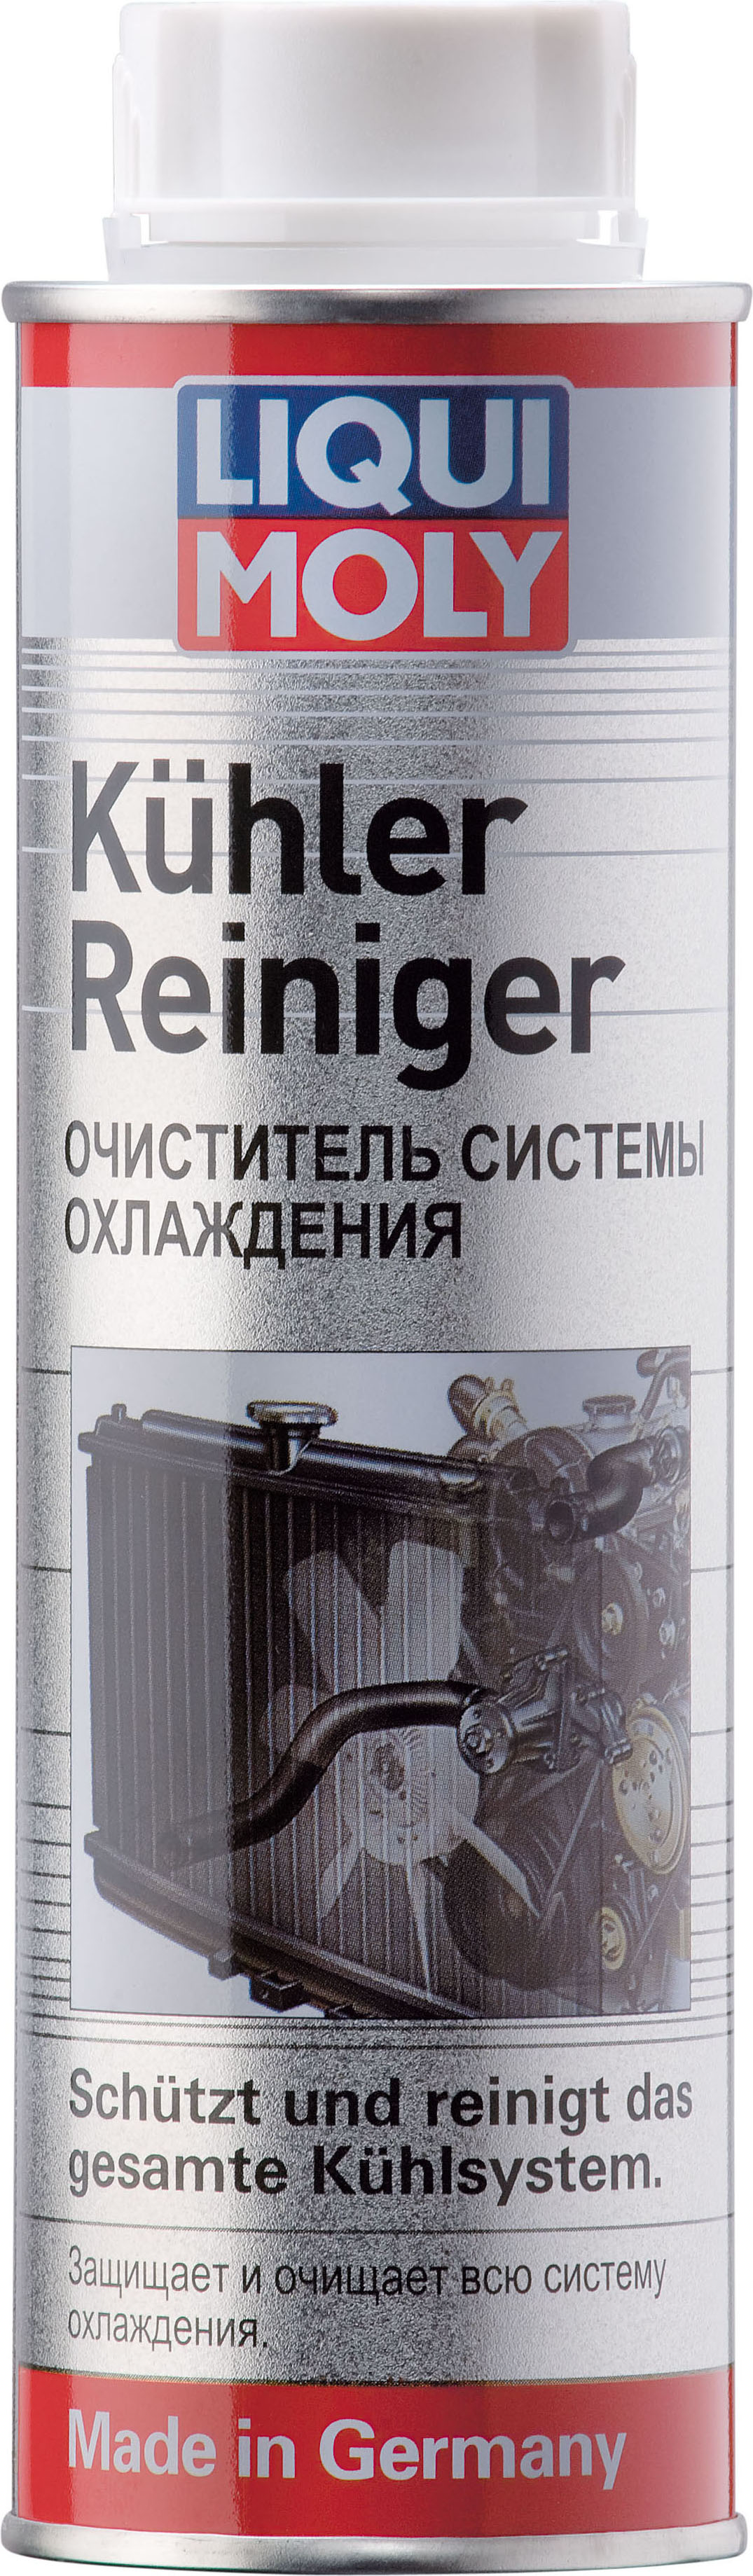 Очиститель системы охлаждения LIQUI MOLY Kuhlerreiniger (0,3 литра)